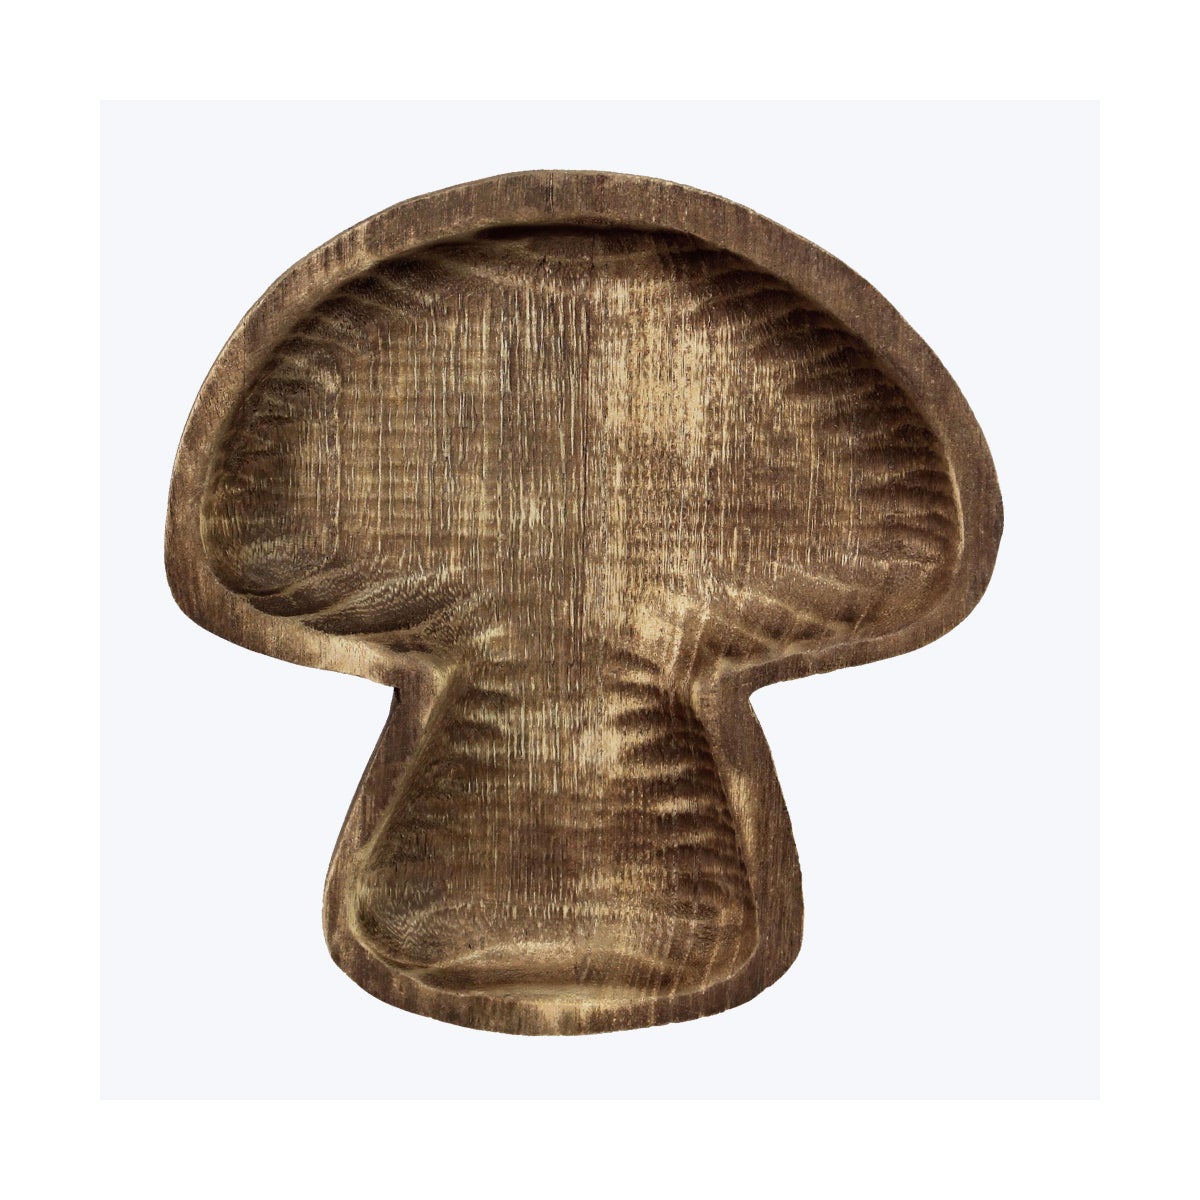 Wood Mushroom Tabletop Dish